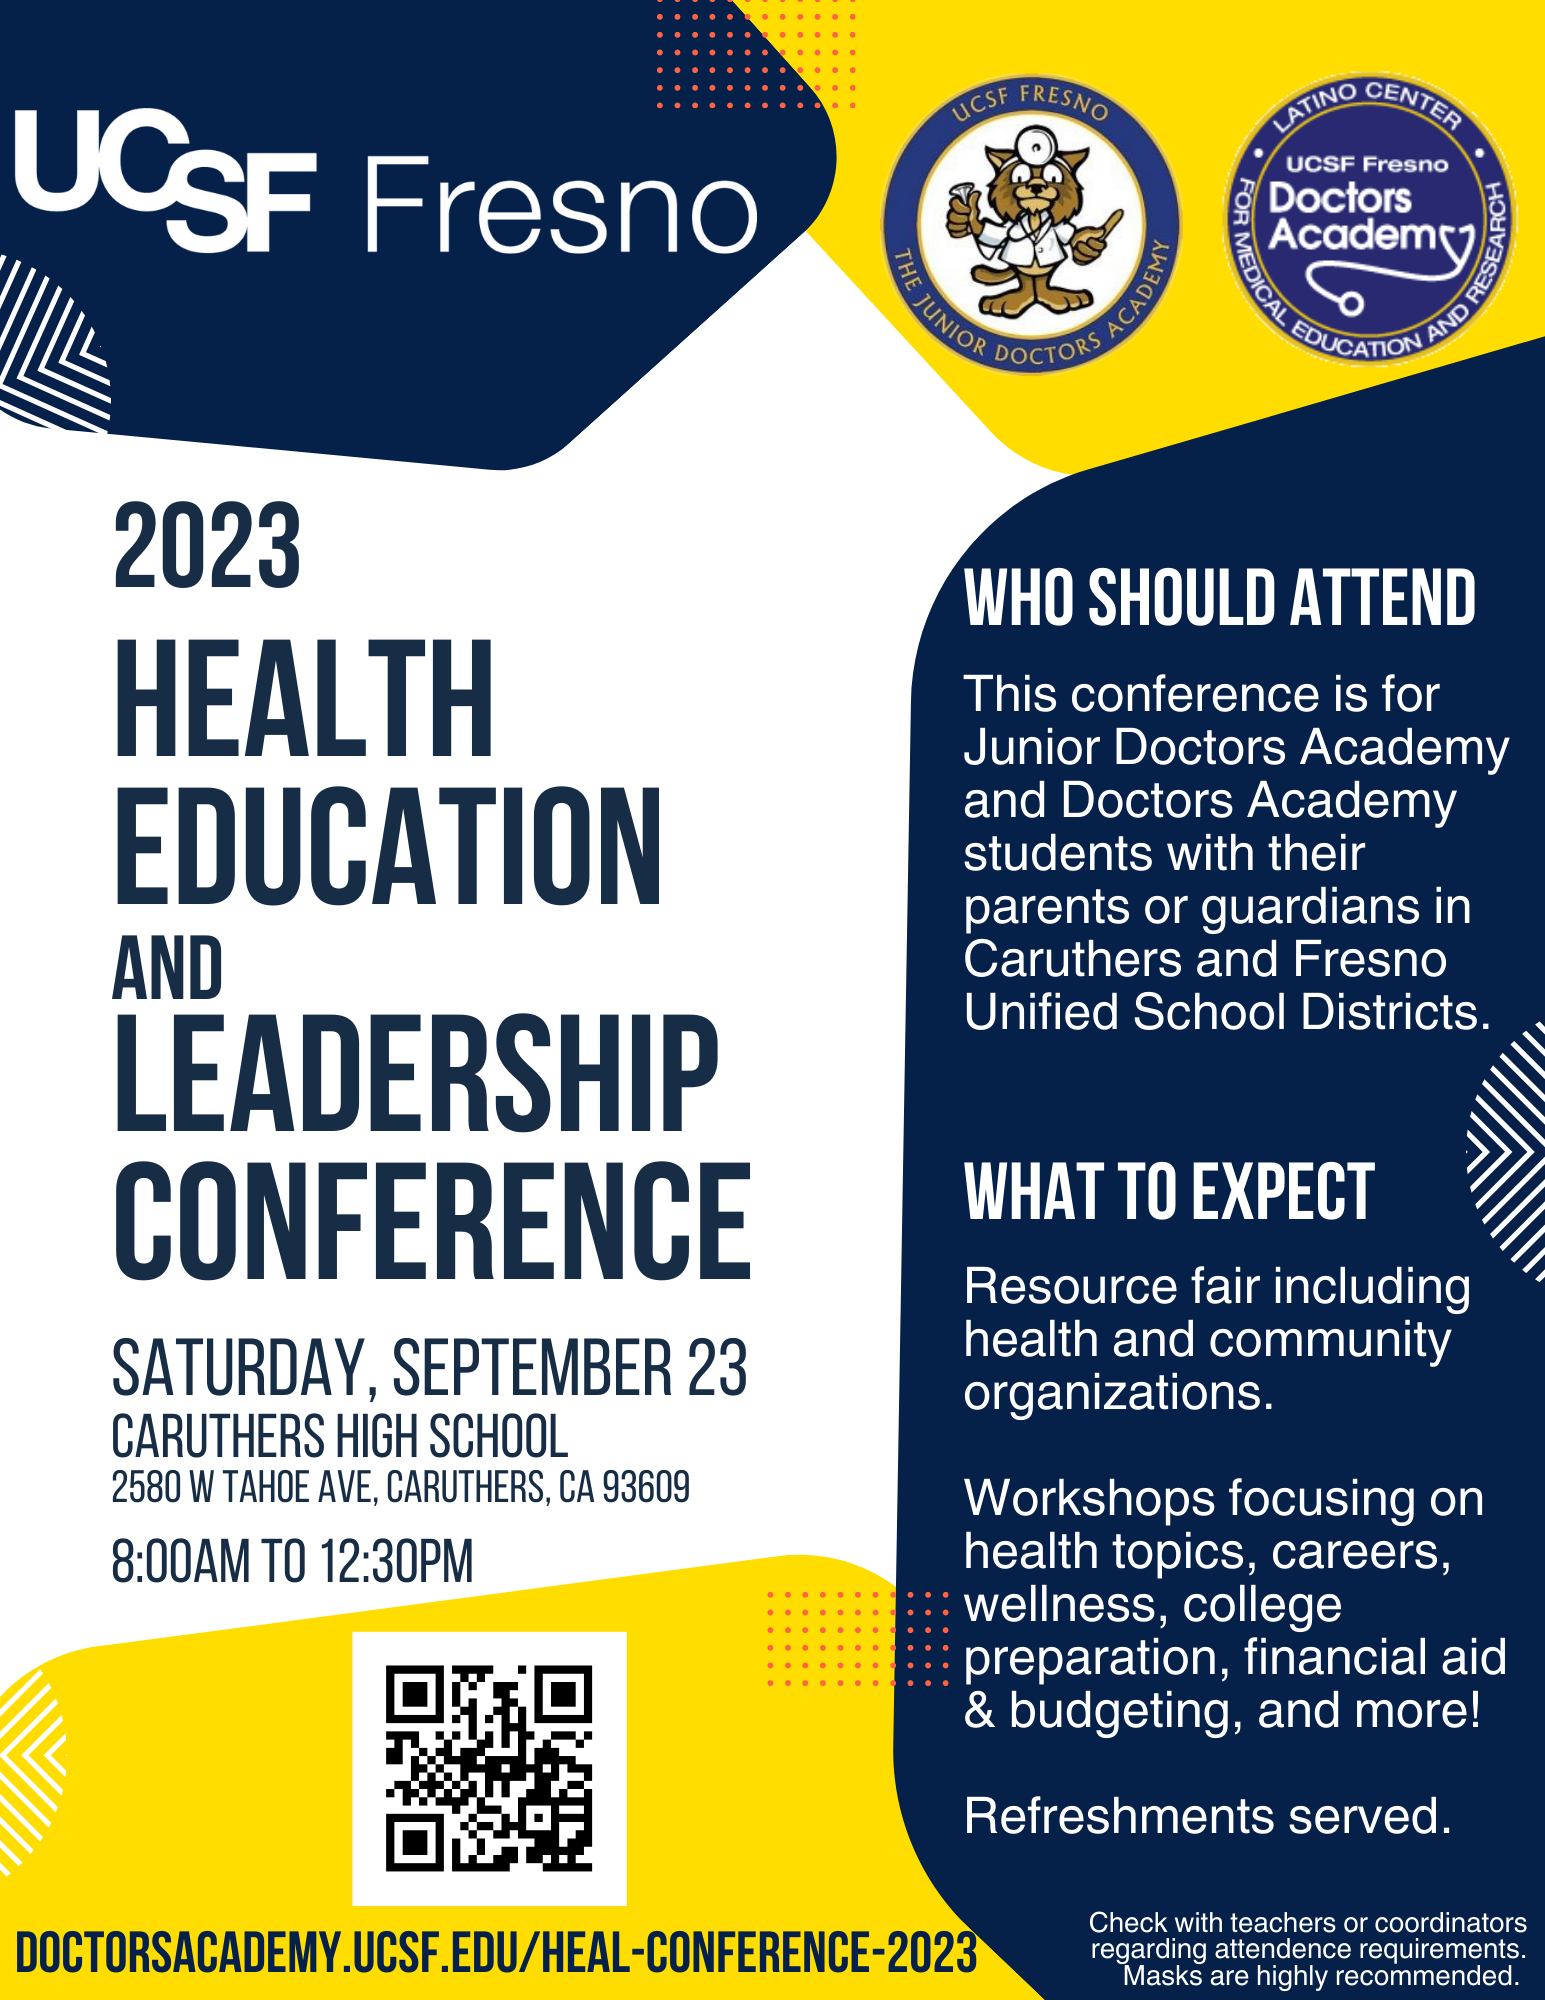 HEaL Conference 2023 Doctors Academy & Junior Doctors Academy